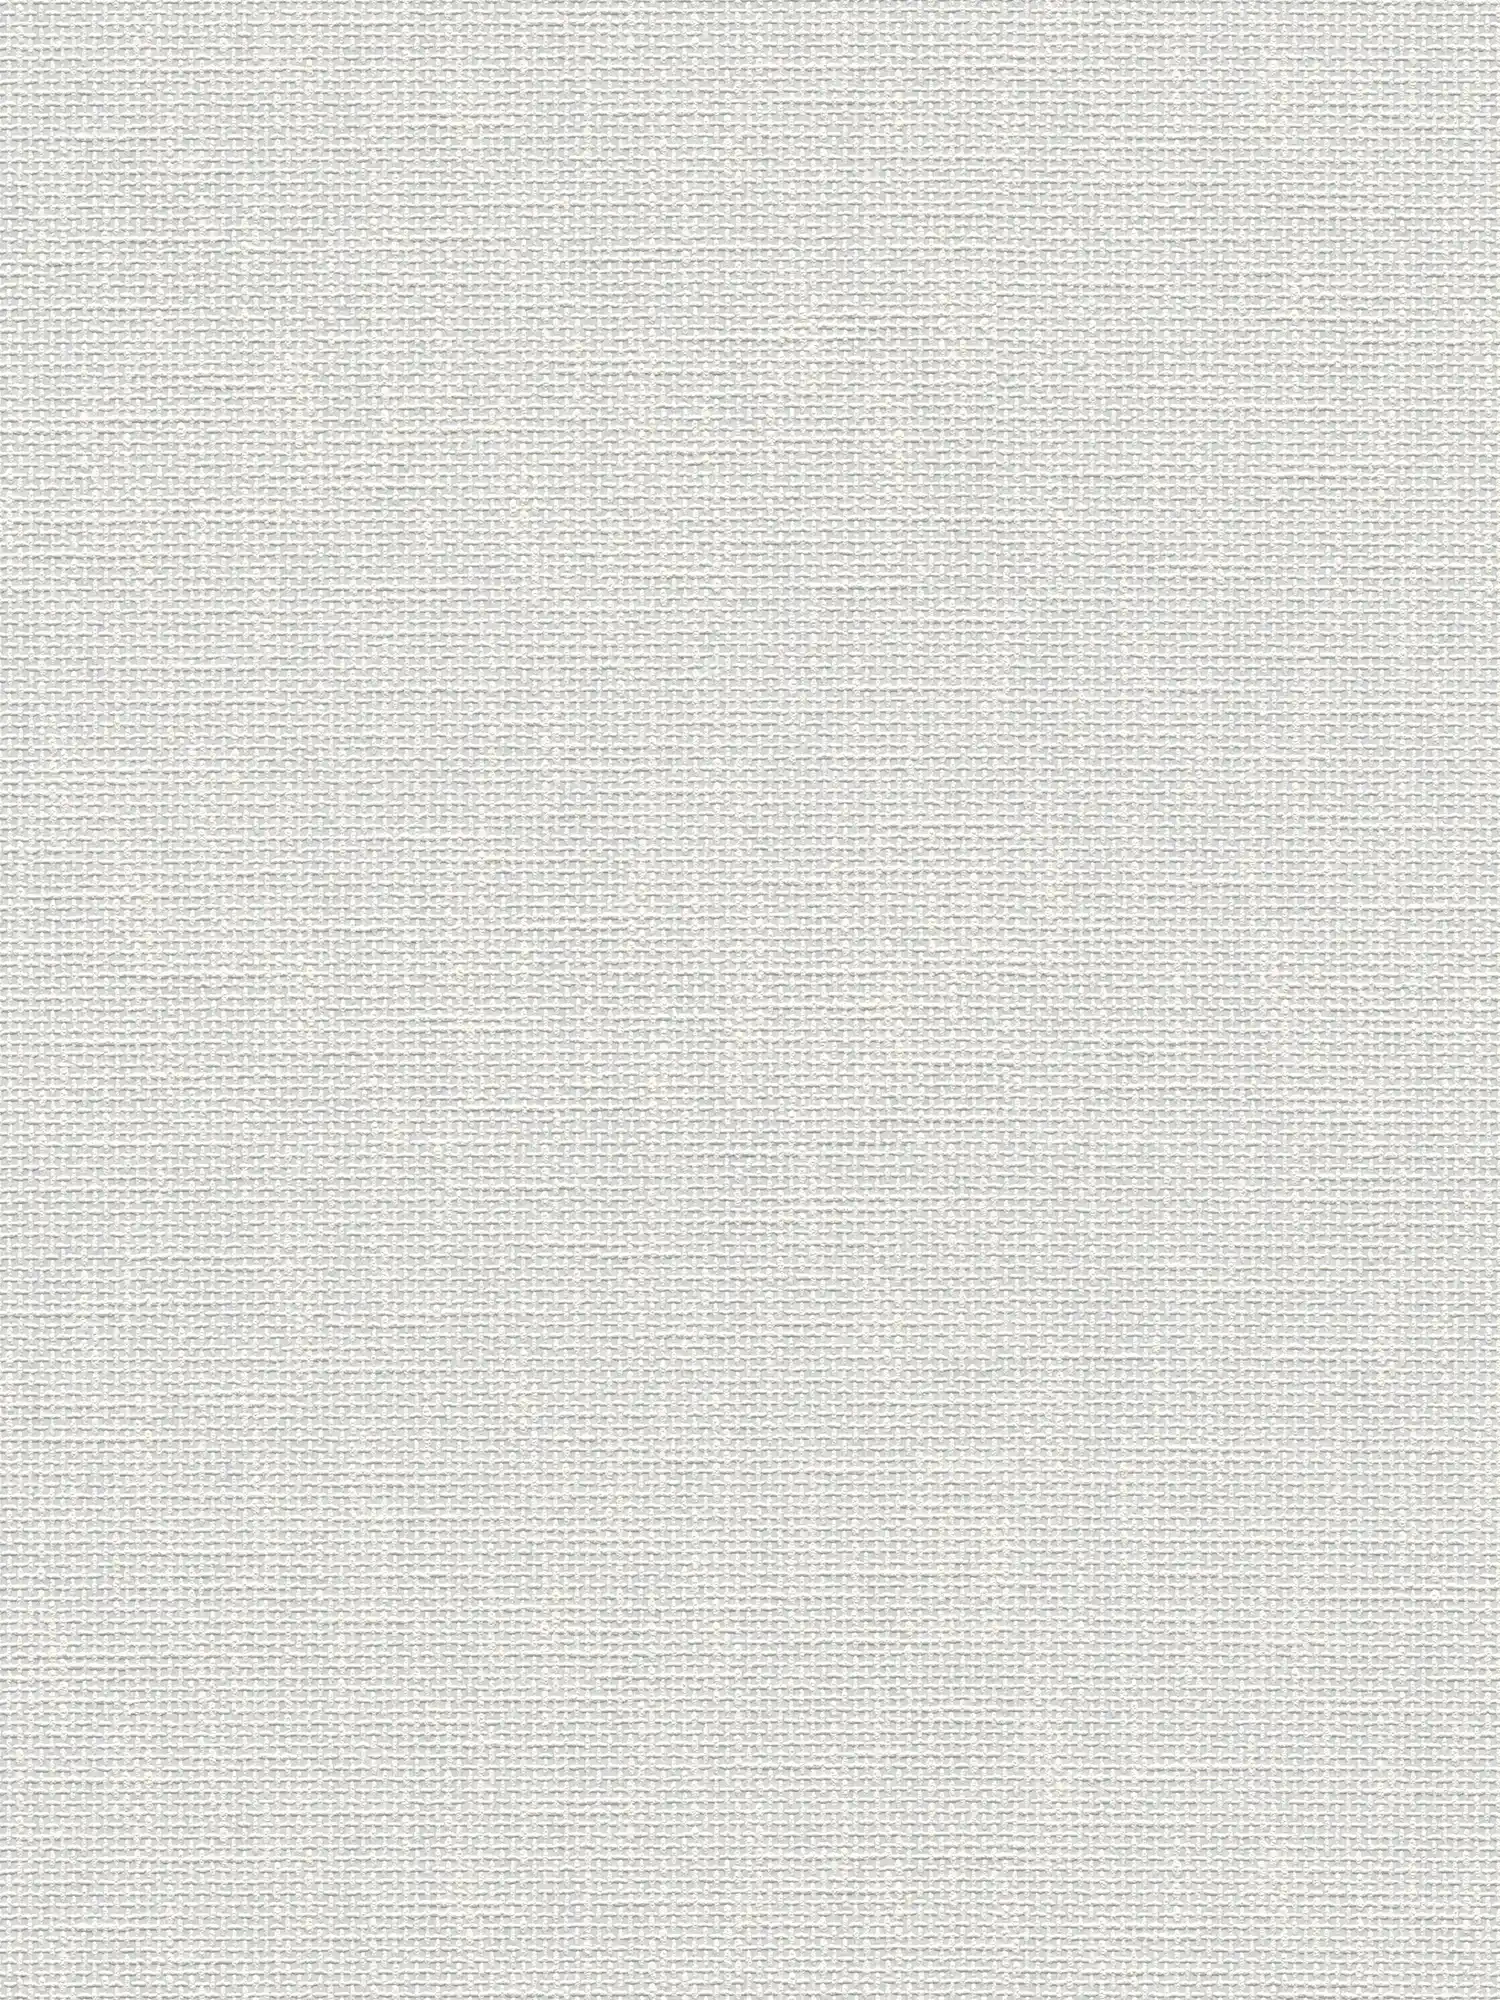 Papel pintado de textura y aspecto textil - blanco
